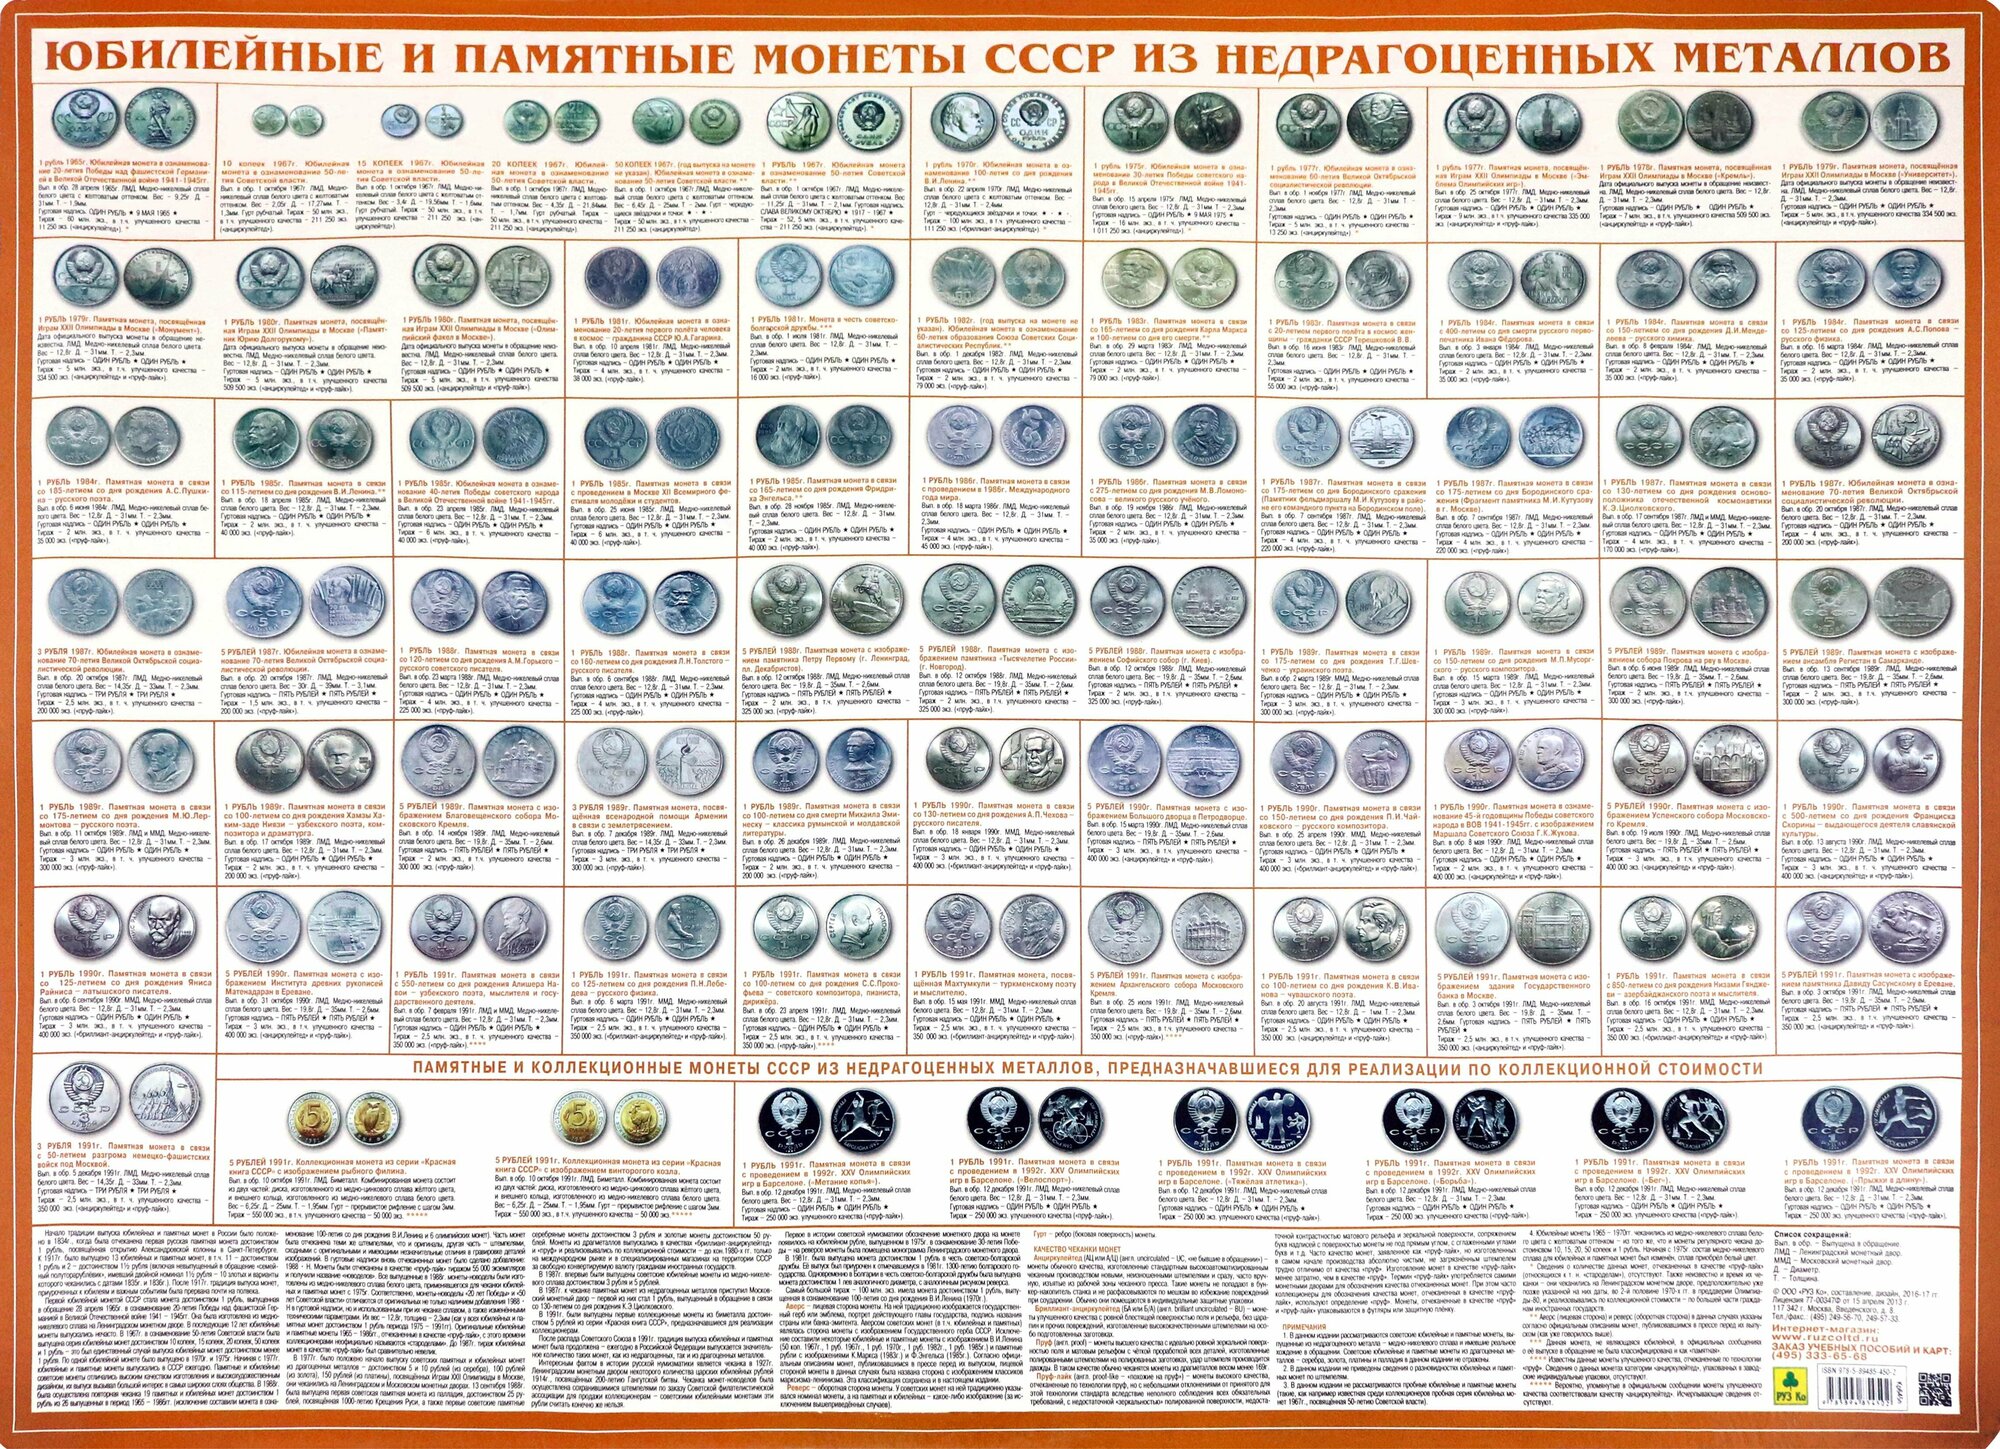 Юбилейные и памятные монеты СССР. Настольное издание - фото №5